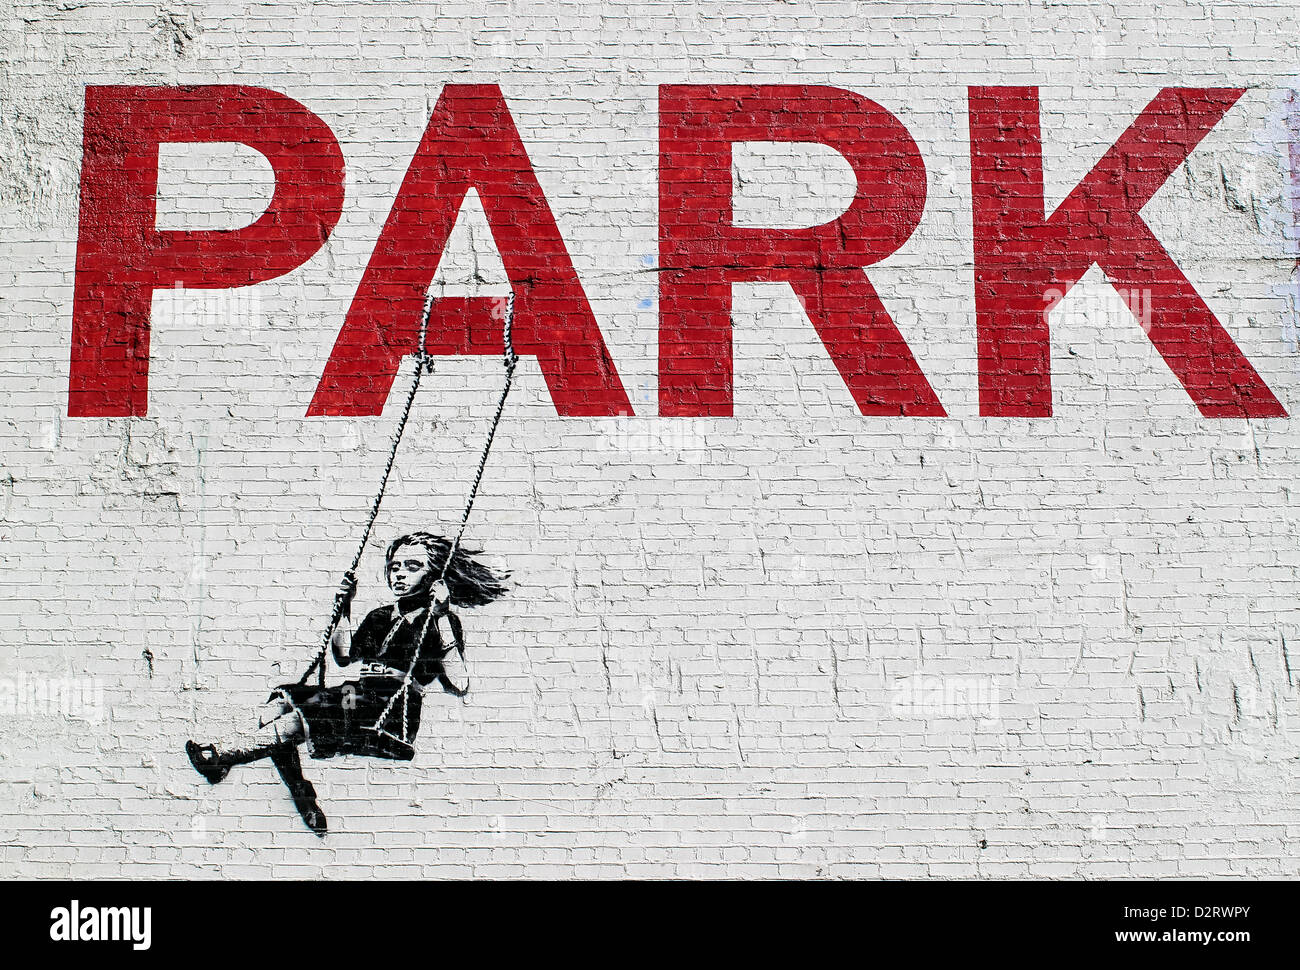 Girl in A Swing von britischen Graffiti-Künstler Banksy auf der Seite Los Angeles Parkplatz Wand gemalt. Stockfoto